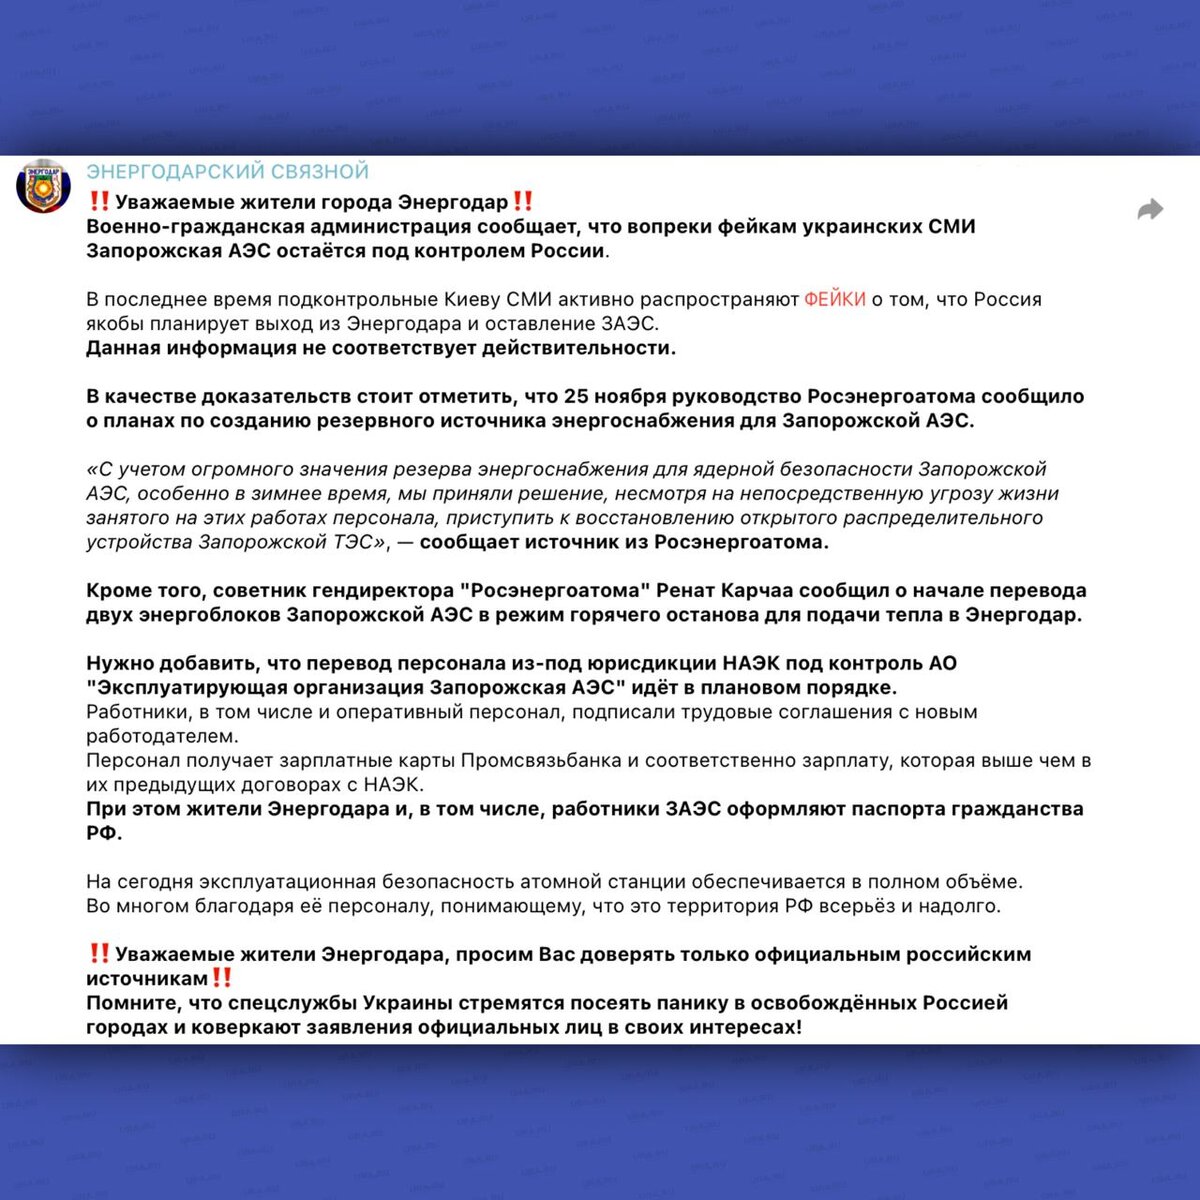 Об этом заявили городская администрация в ответ на украинские фейки о якобы планируемом отступлении.